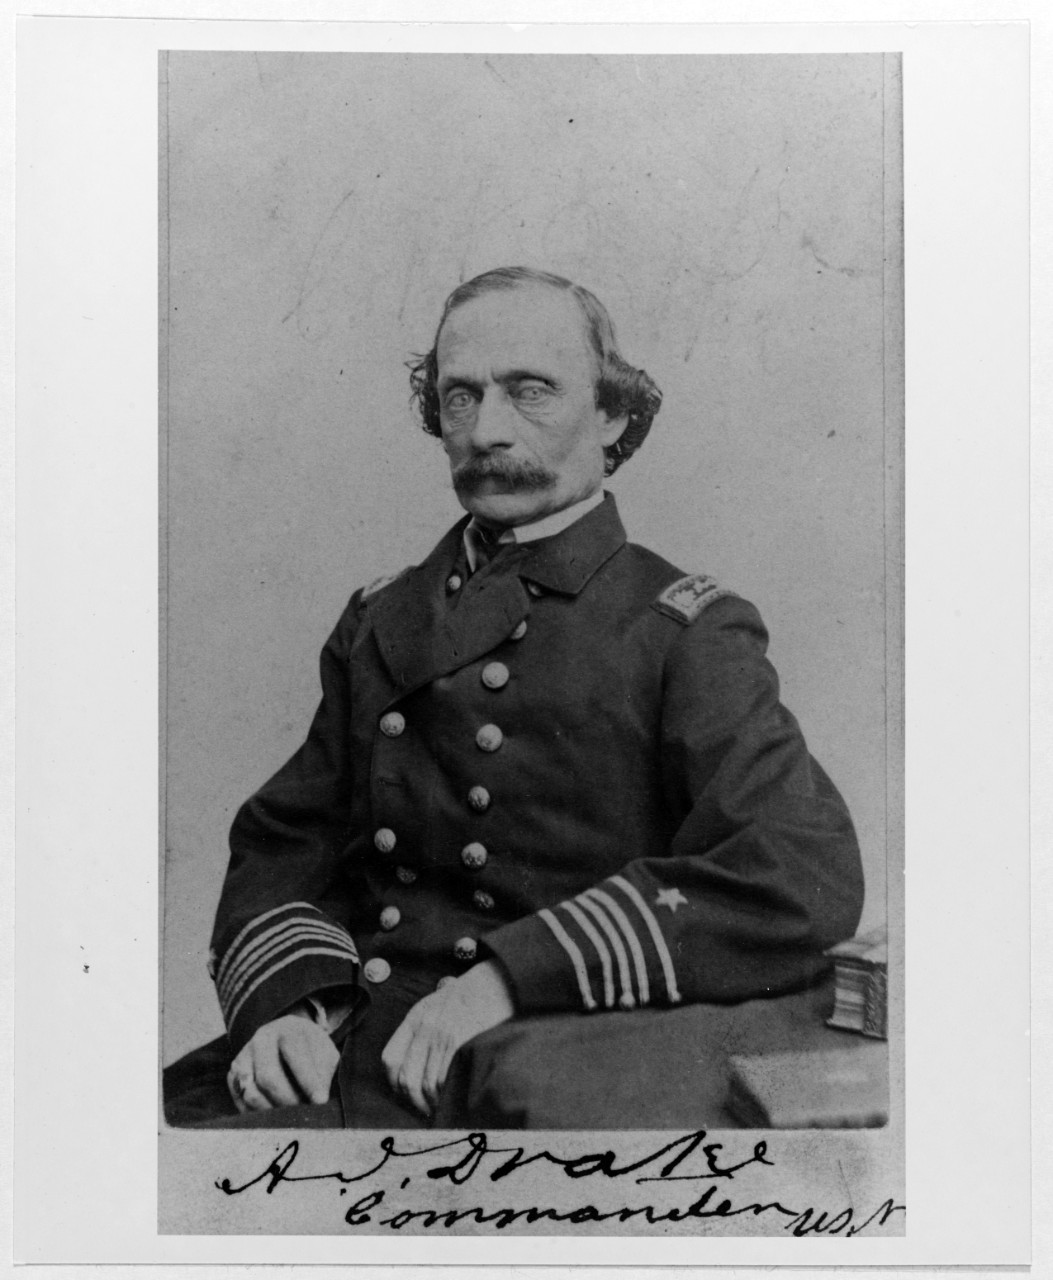 Commander Andrew J. Drake, USN